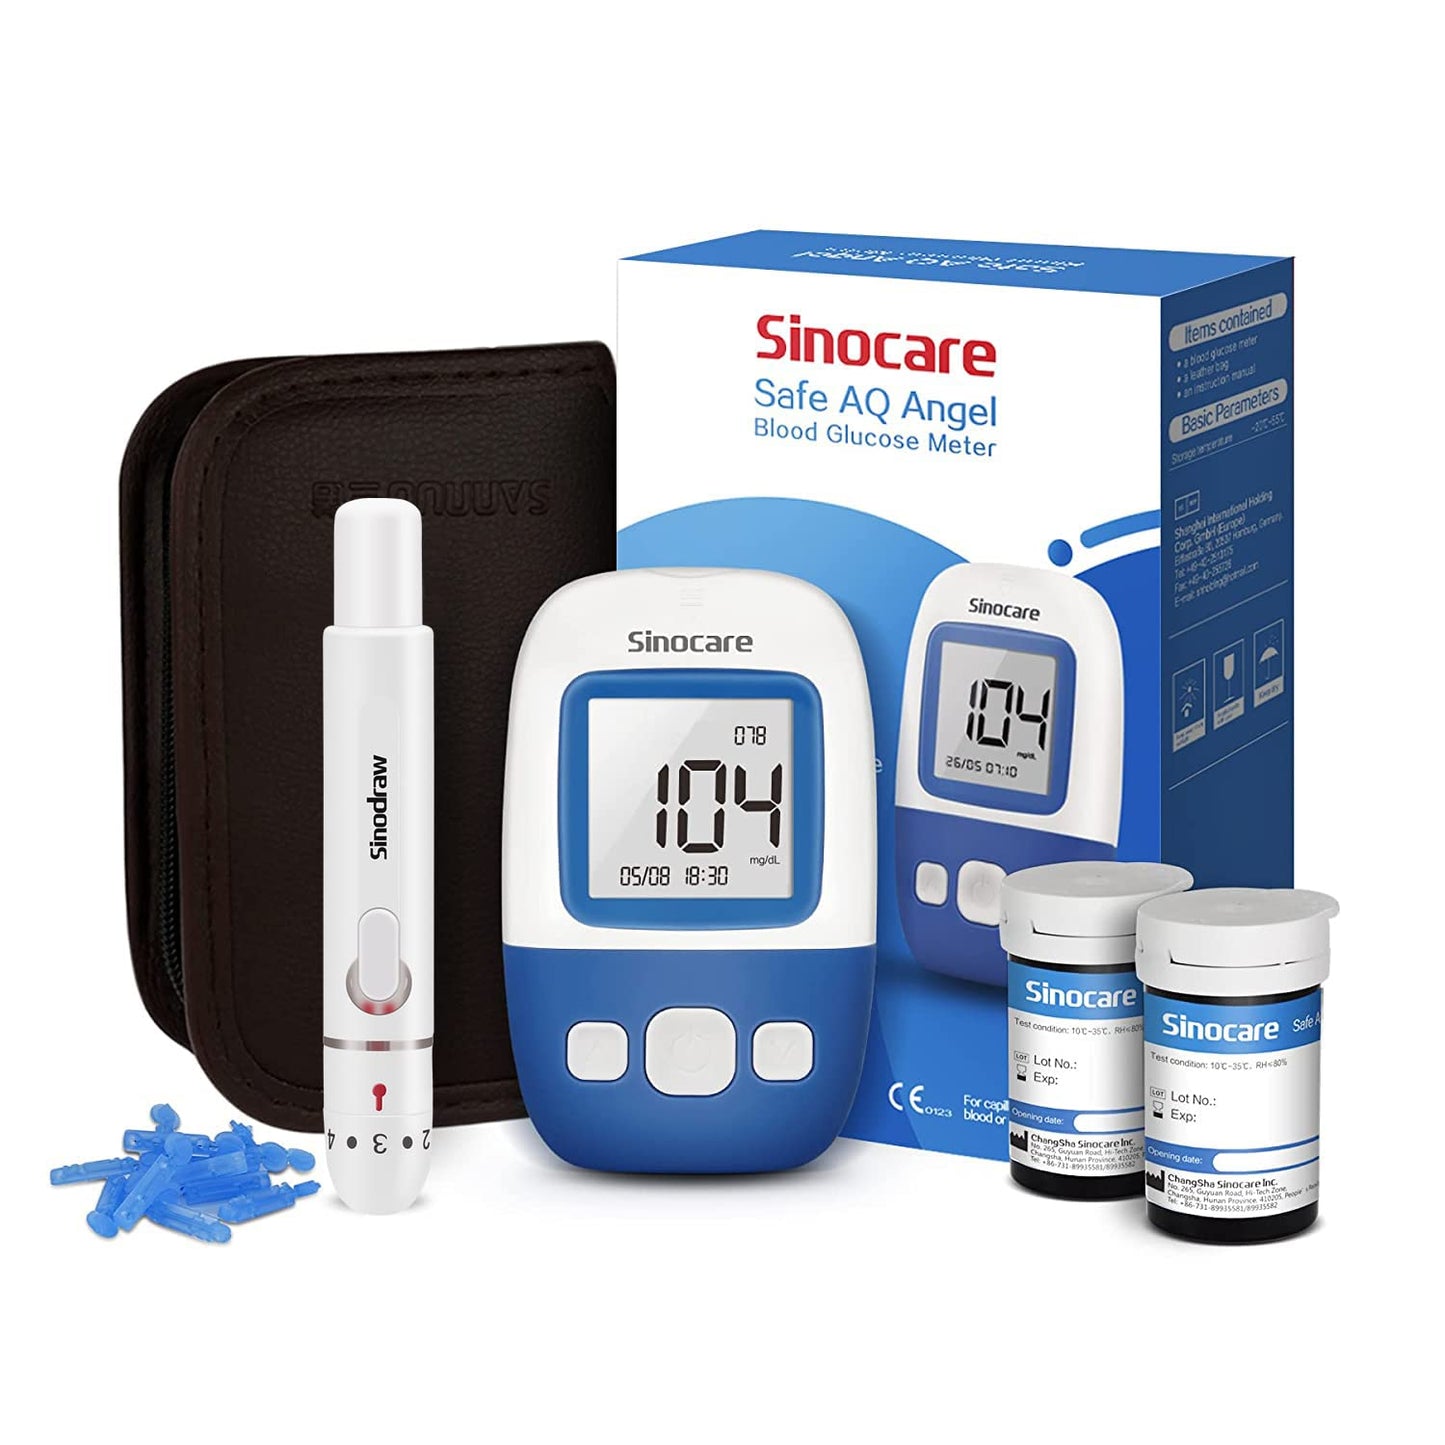 Sinocare Blutzuckermessgerät Safe AQ Angel mit innovativen Chips, schneller Messung und winzigem Volumen（10 Jahre Gewährleistung, Niedrigster Preis auf allen Plattformen）